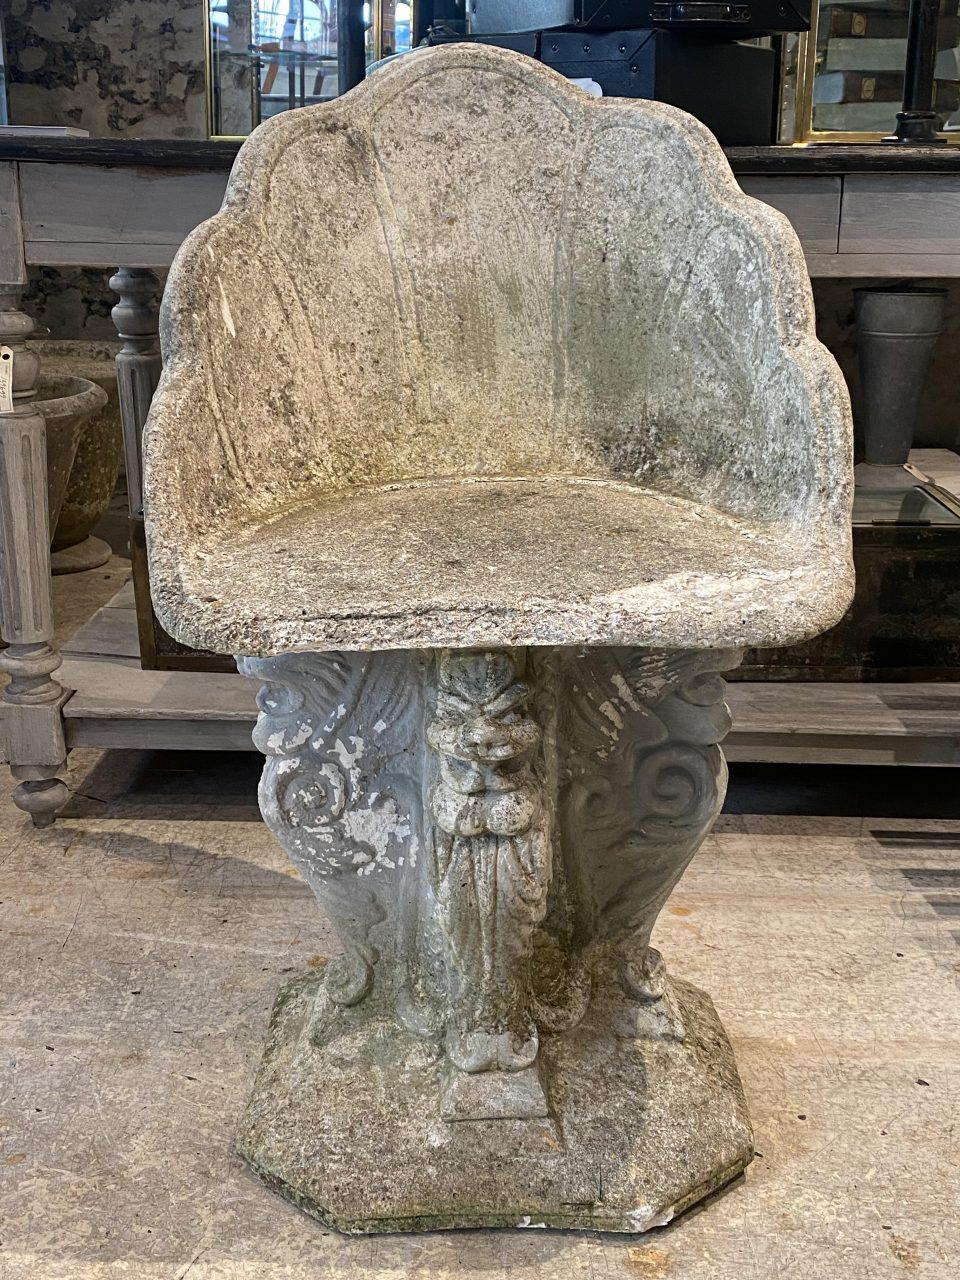 Absolut außergewöhnlich, und charmant Mitte des Jahrhunderts Französisch Gartenstuhl / skulpturale Figur. Aus Zement gegossen und mit einer Sitzfläche versehen, in der schönen Form einer Muschel, die auf einem Sockel mit 3 Sphinxen ruht. Der